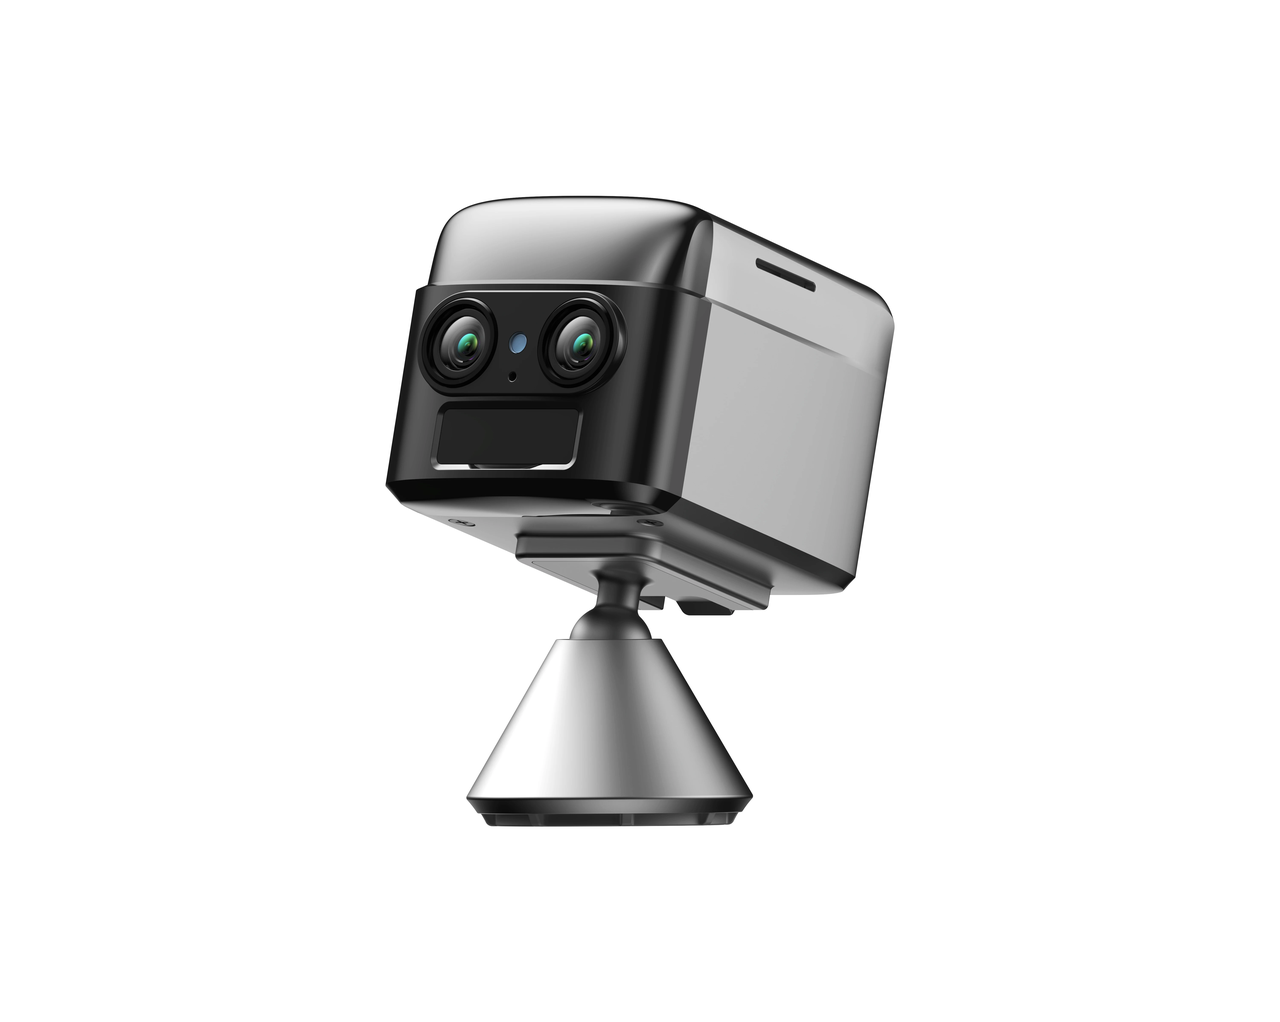 4G міні камера Camsoy S70 з автономною роботою до 1 року, PIR датчиком руху і нічним підсвічуванням